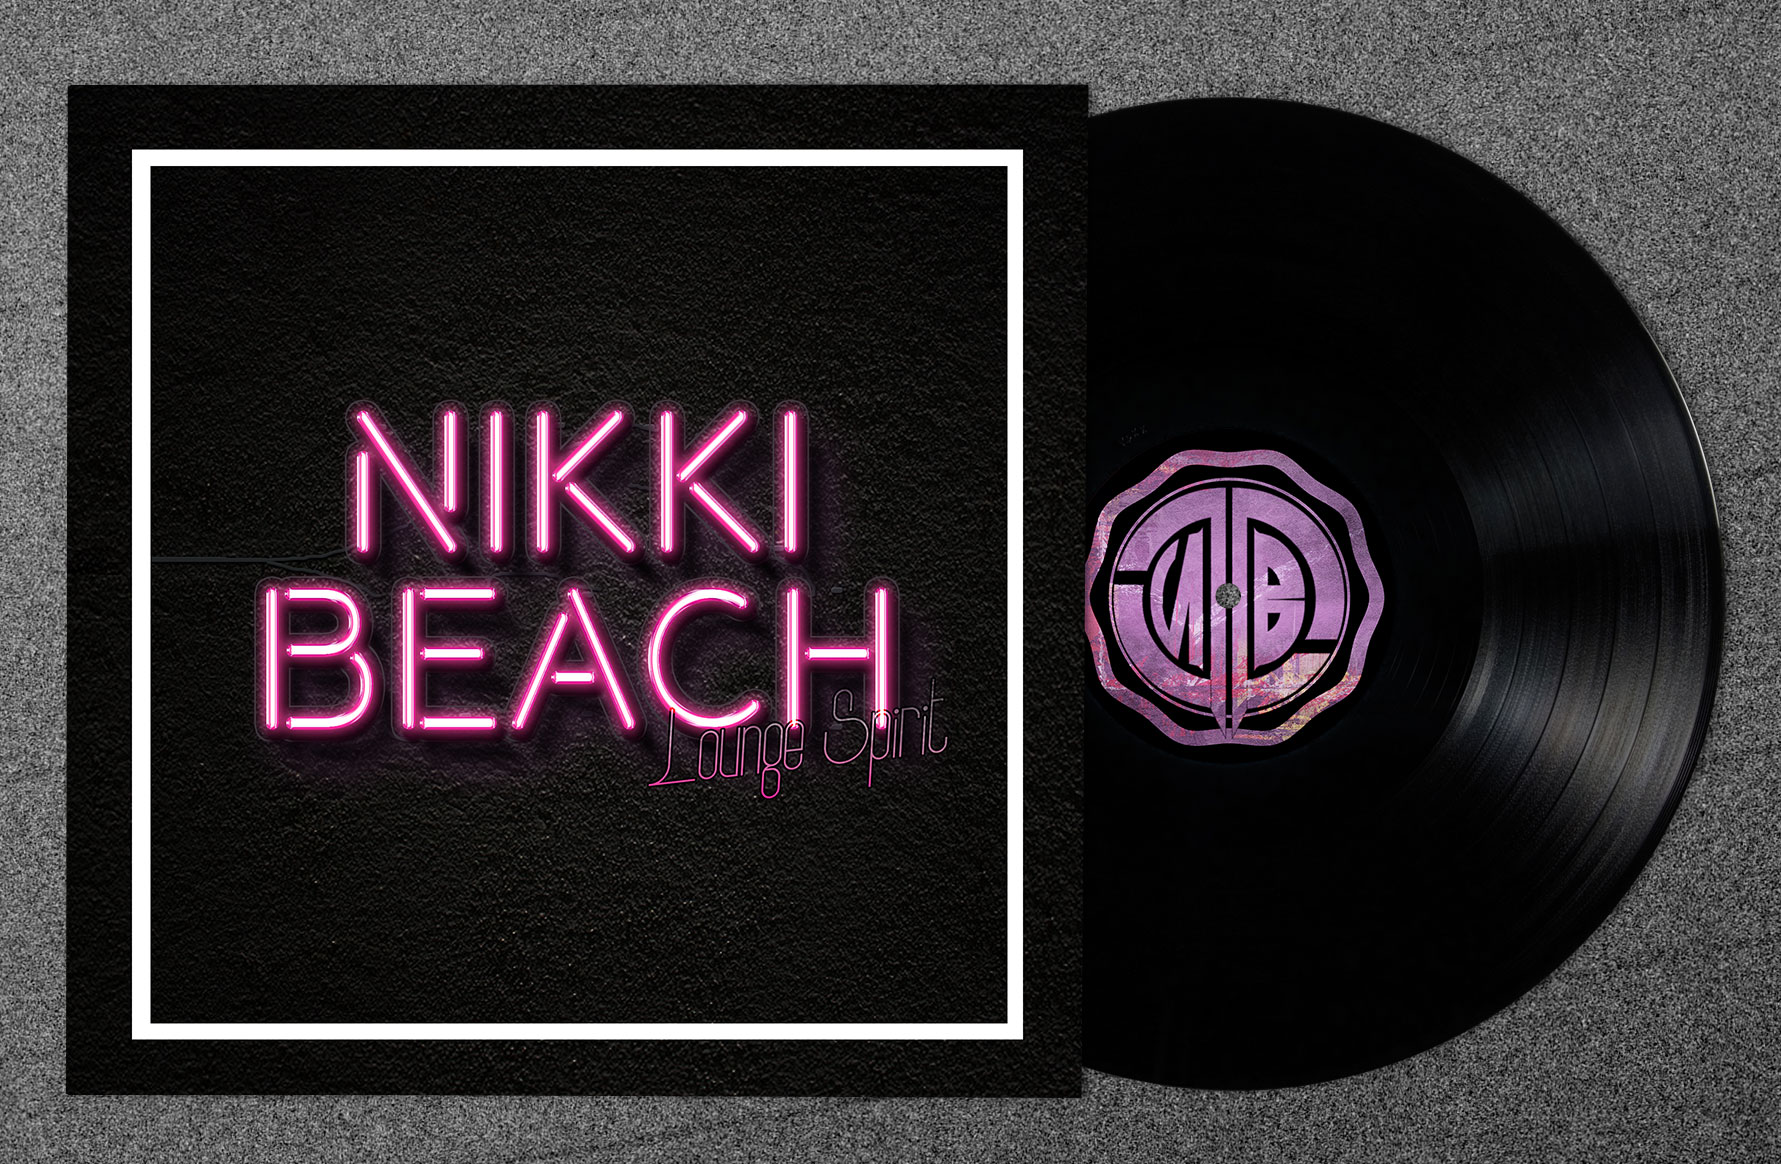 Nikki Beach Lounge Spirit by TBoon